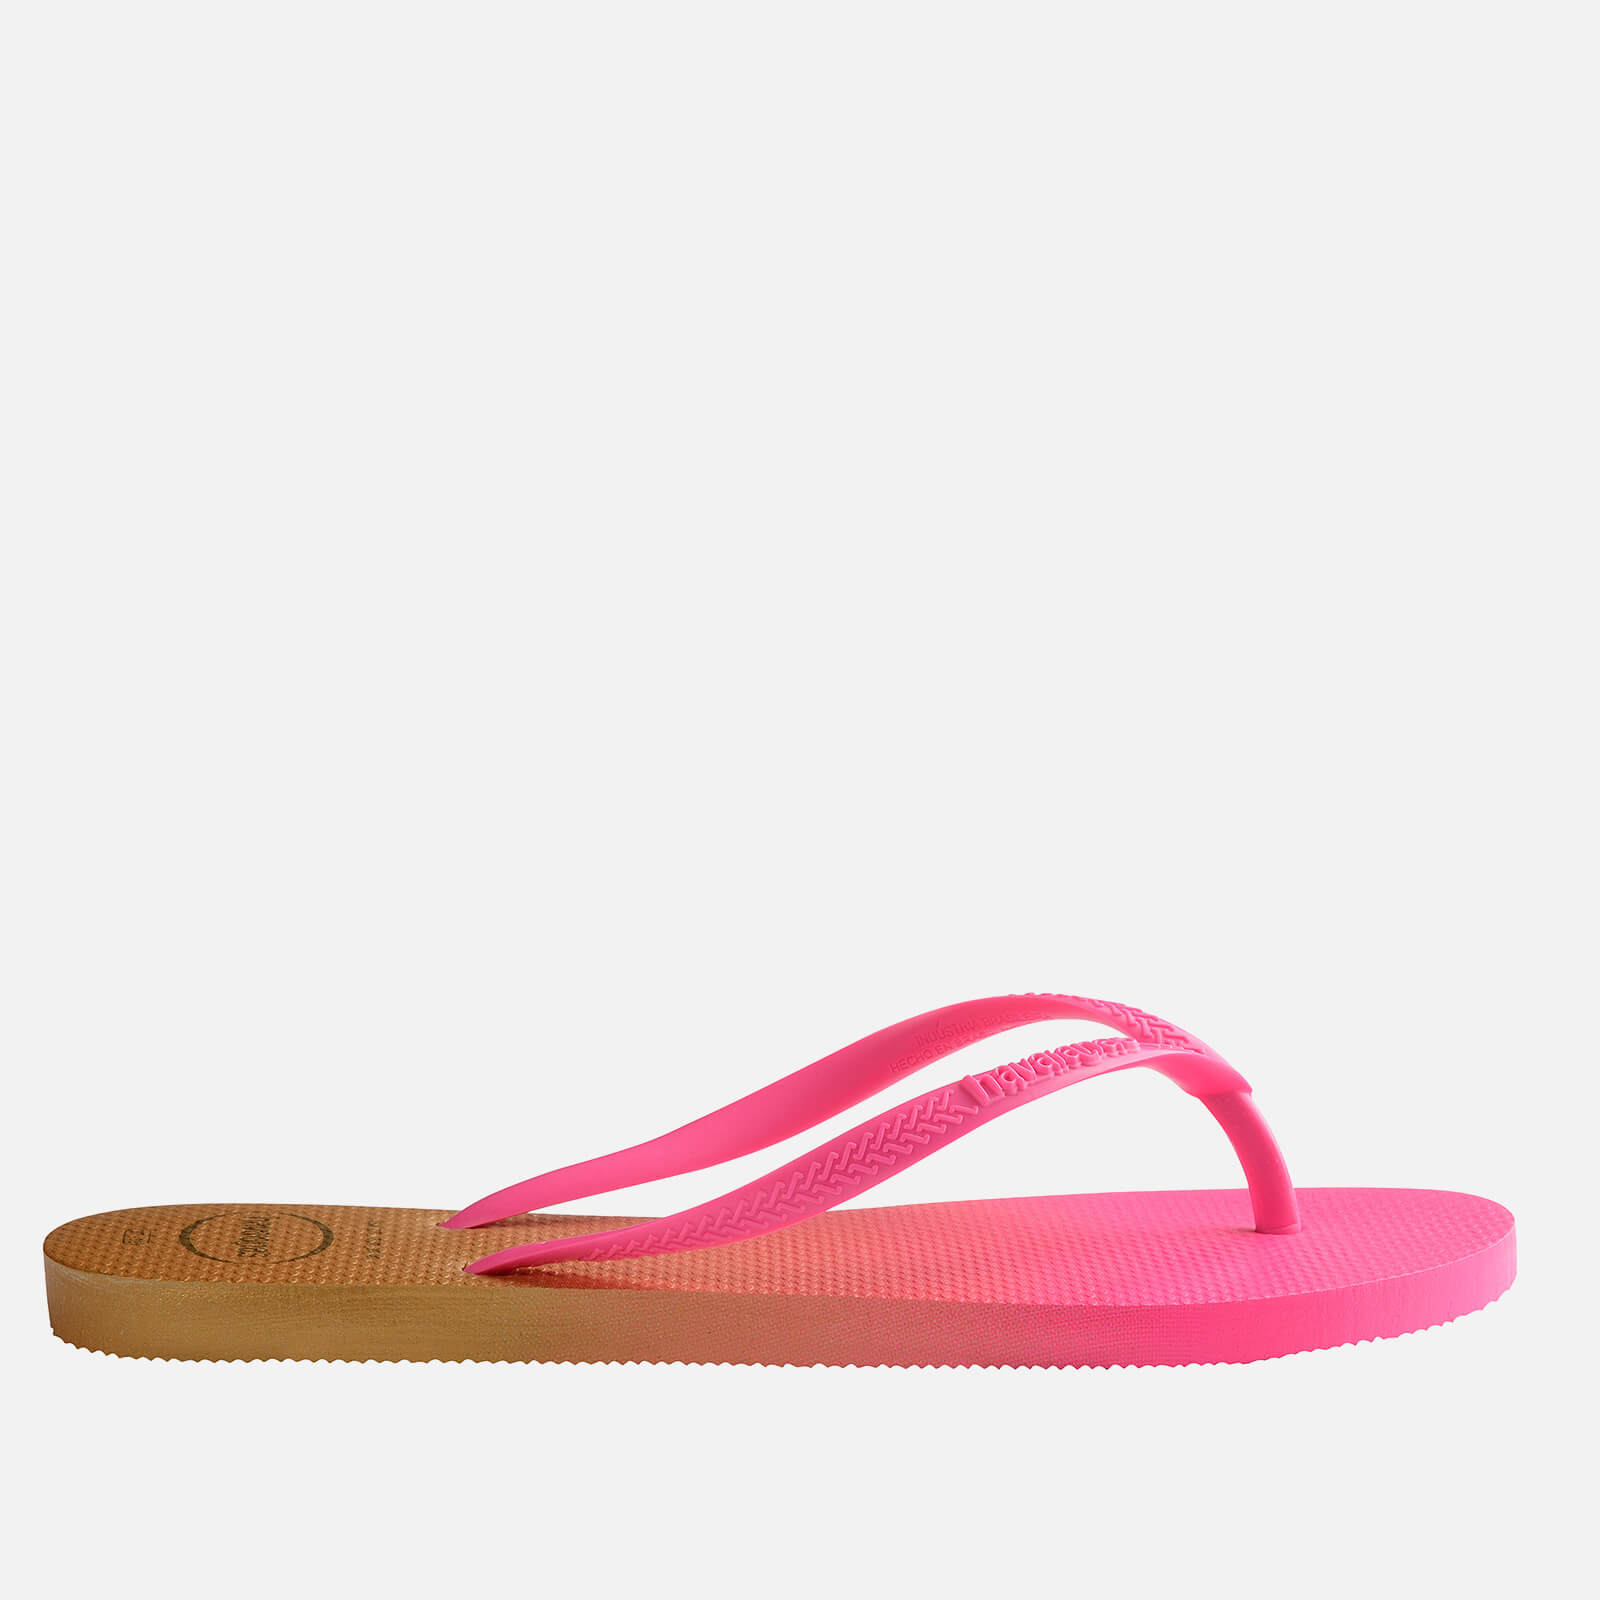 Havaianas Women's Slim Gradient Flip Flops - White/Fluorescent Pink - UK 3/UK 4